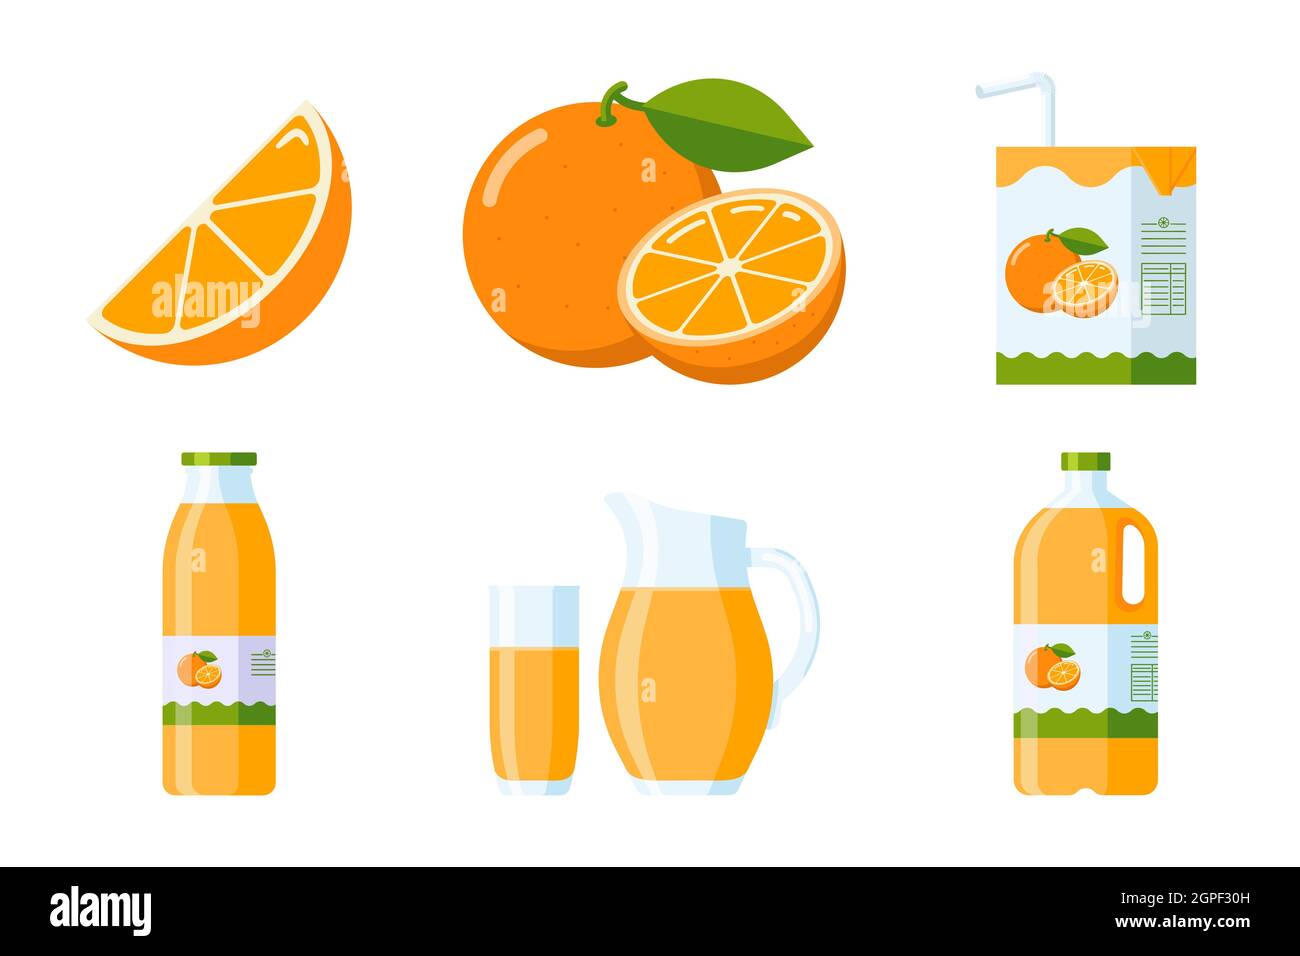 Collection Orange fruit and Juice Elements. Ensemble plat d'agrumes : tranche d'orange et fruits entiers, boîte de jus d'orange, verre, verseuse, plastique et bouteille de verre. Vecteur Premium Illustration de Vecteur